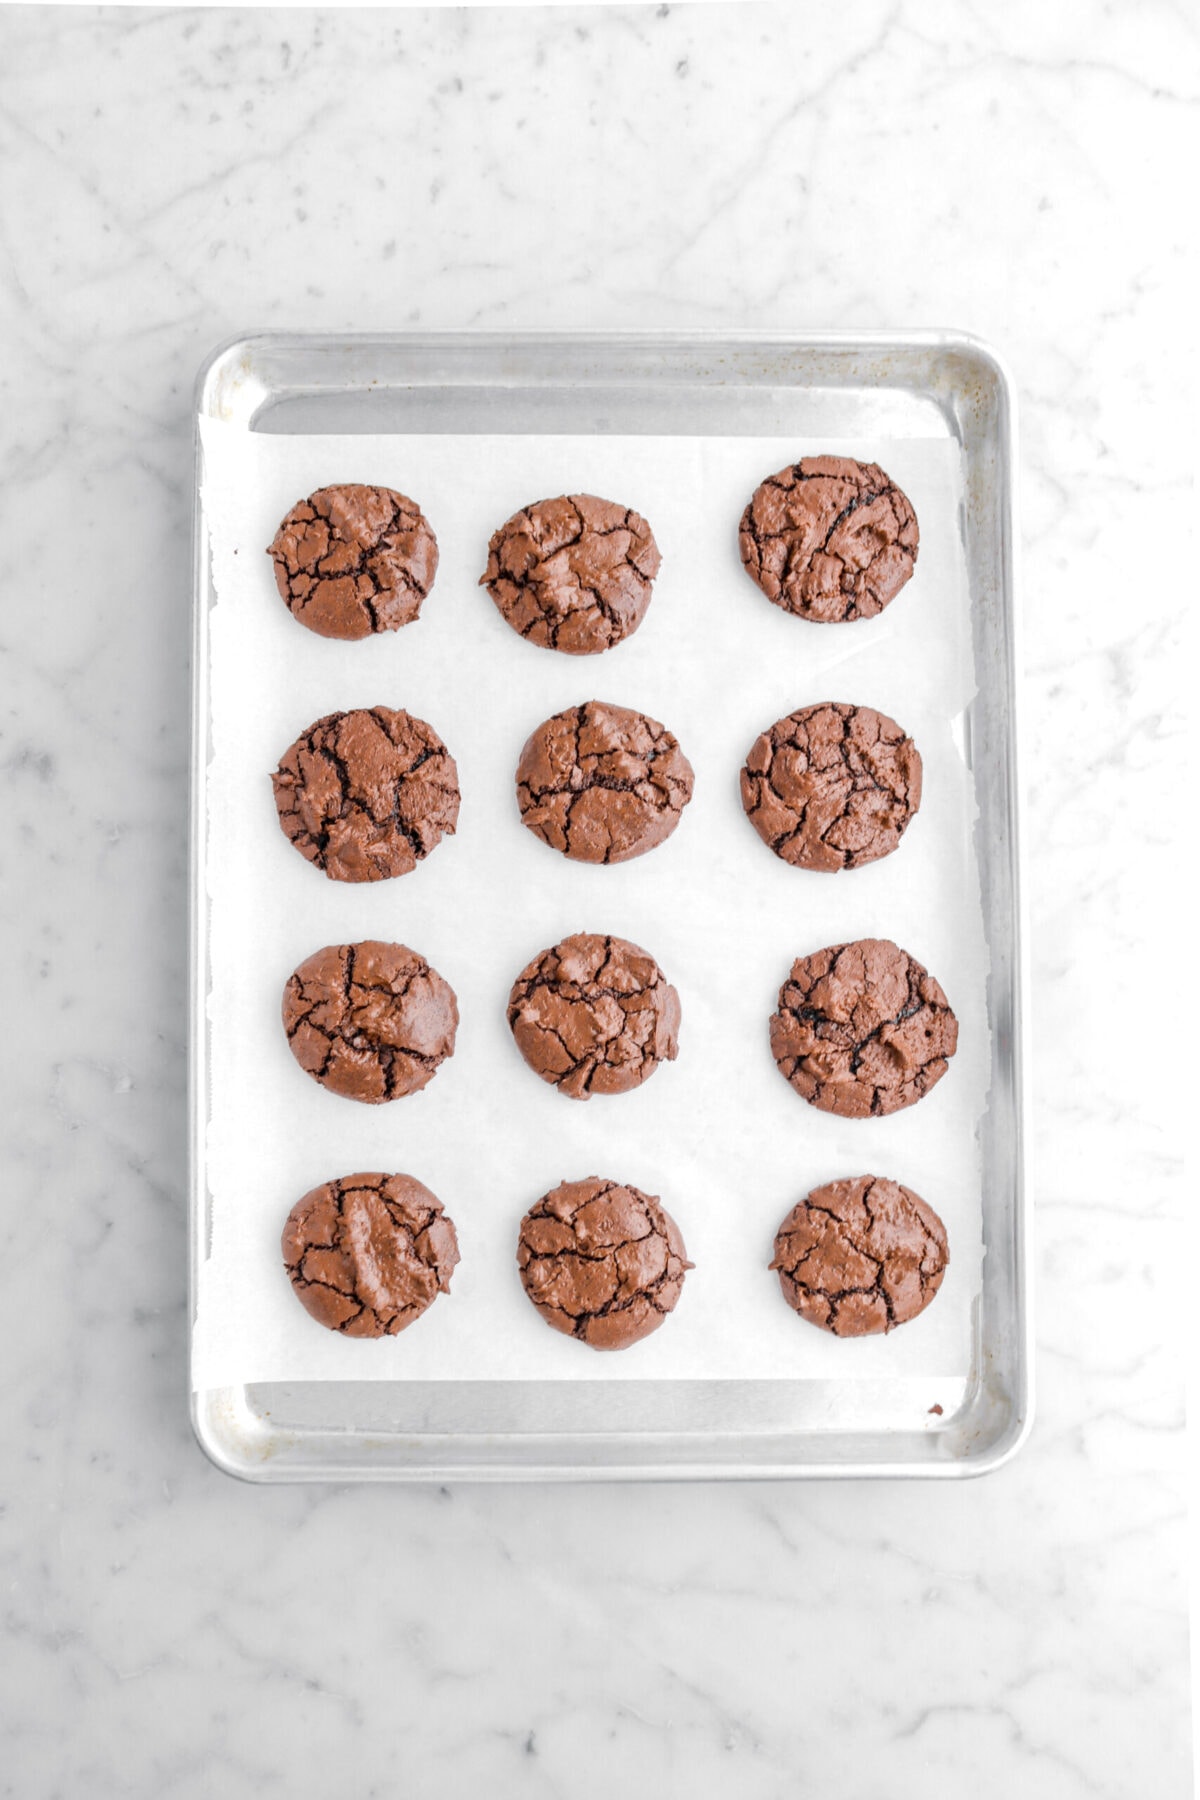 twelve baked brownie cookies on lined sheet pan.